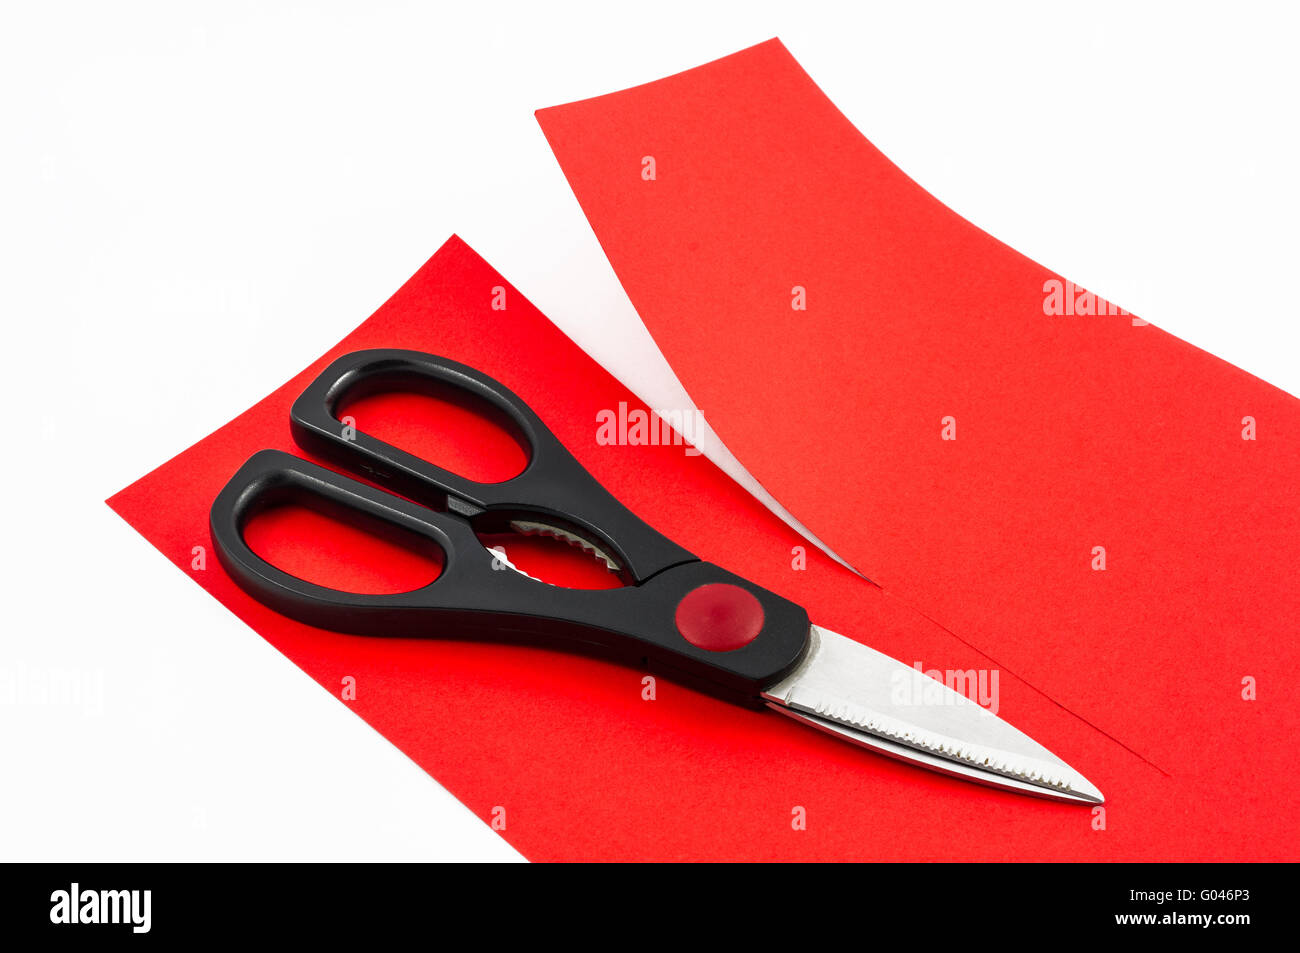 Schere, rotes Papier in zwei Teile schneiden Stockfoto